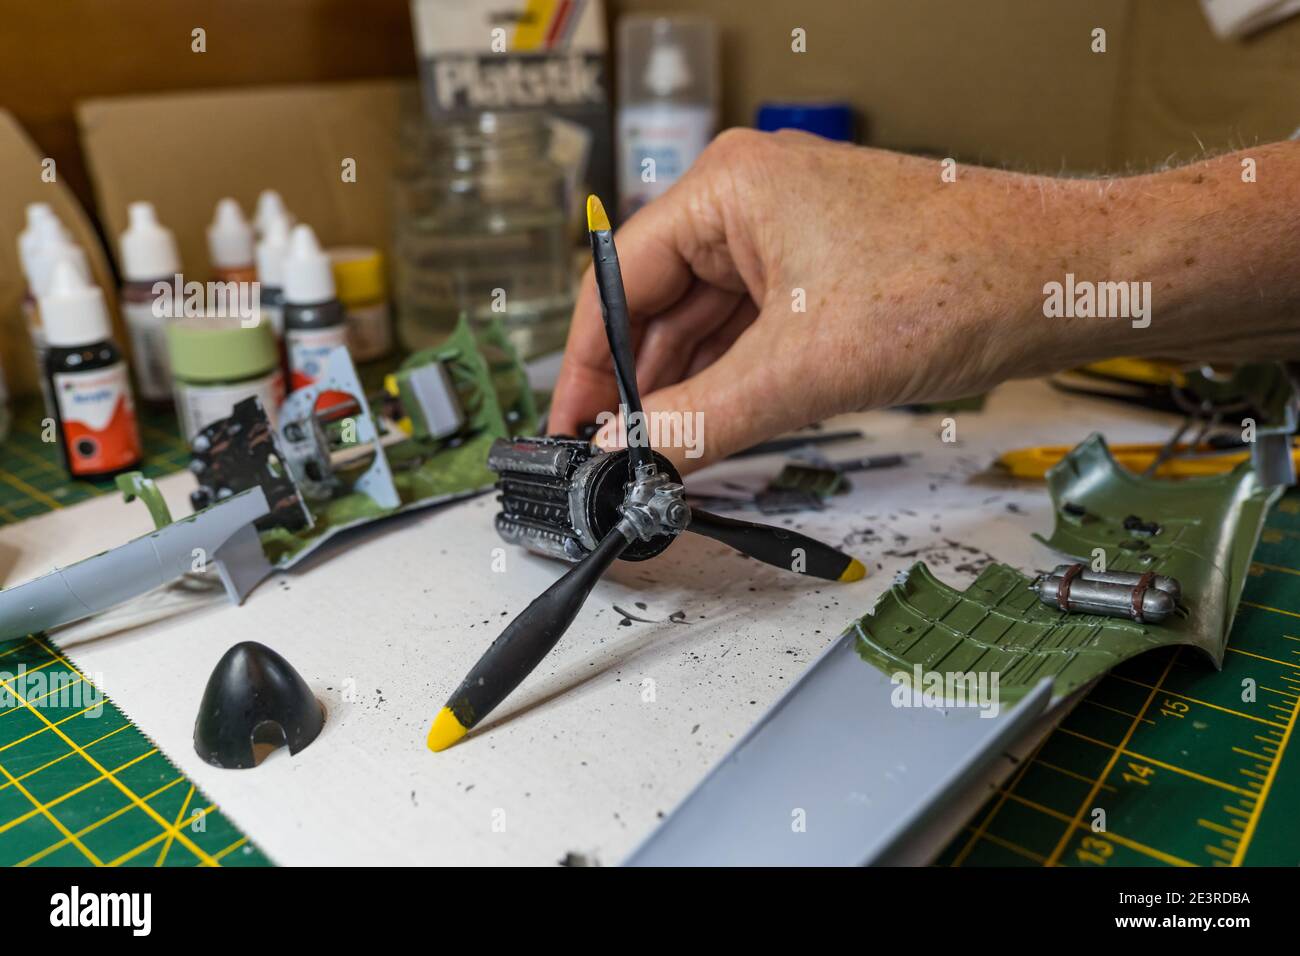 Homme construisant le moteur d'Airfix Spitfire modèle avion 1/24th in pèse-personne sur le bureau Banque D'Images